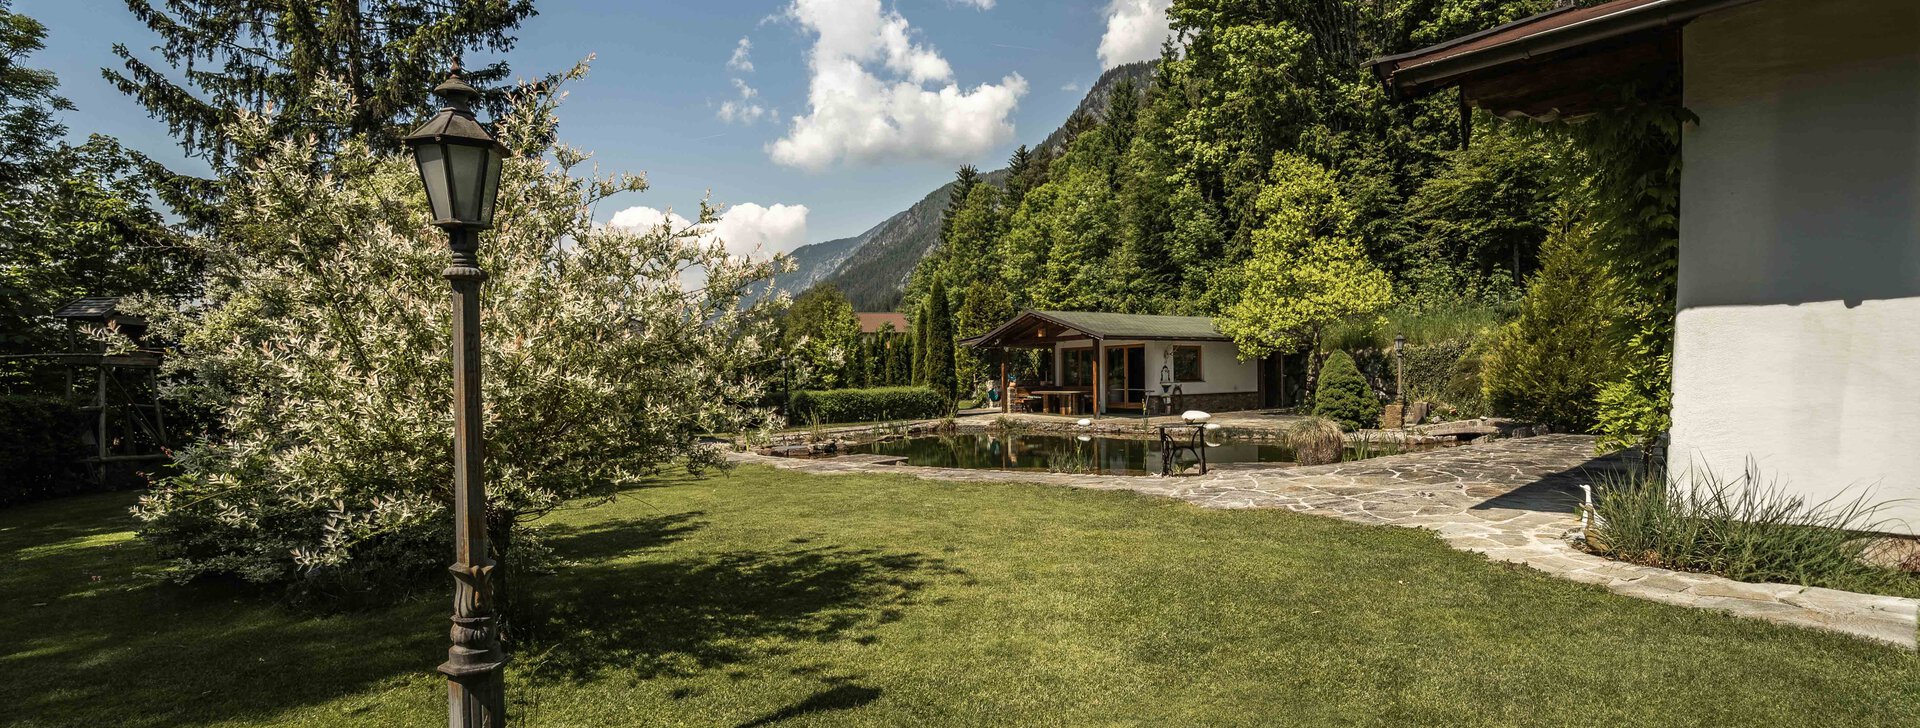 Haus kaufen, Tirol, Angerberg, Kufstein, Österreich, Landsitz, Immobilien Österreich | © HausBauHaus GmbH